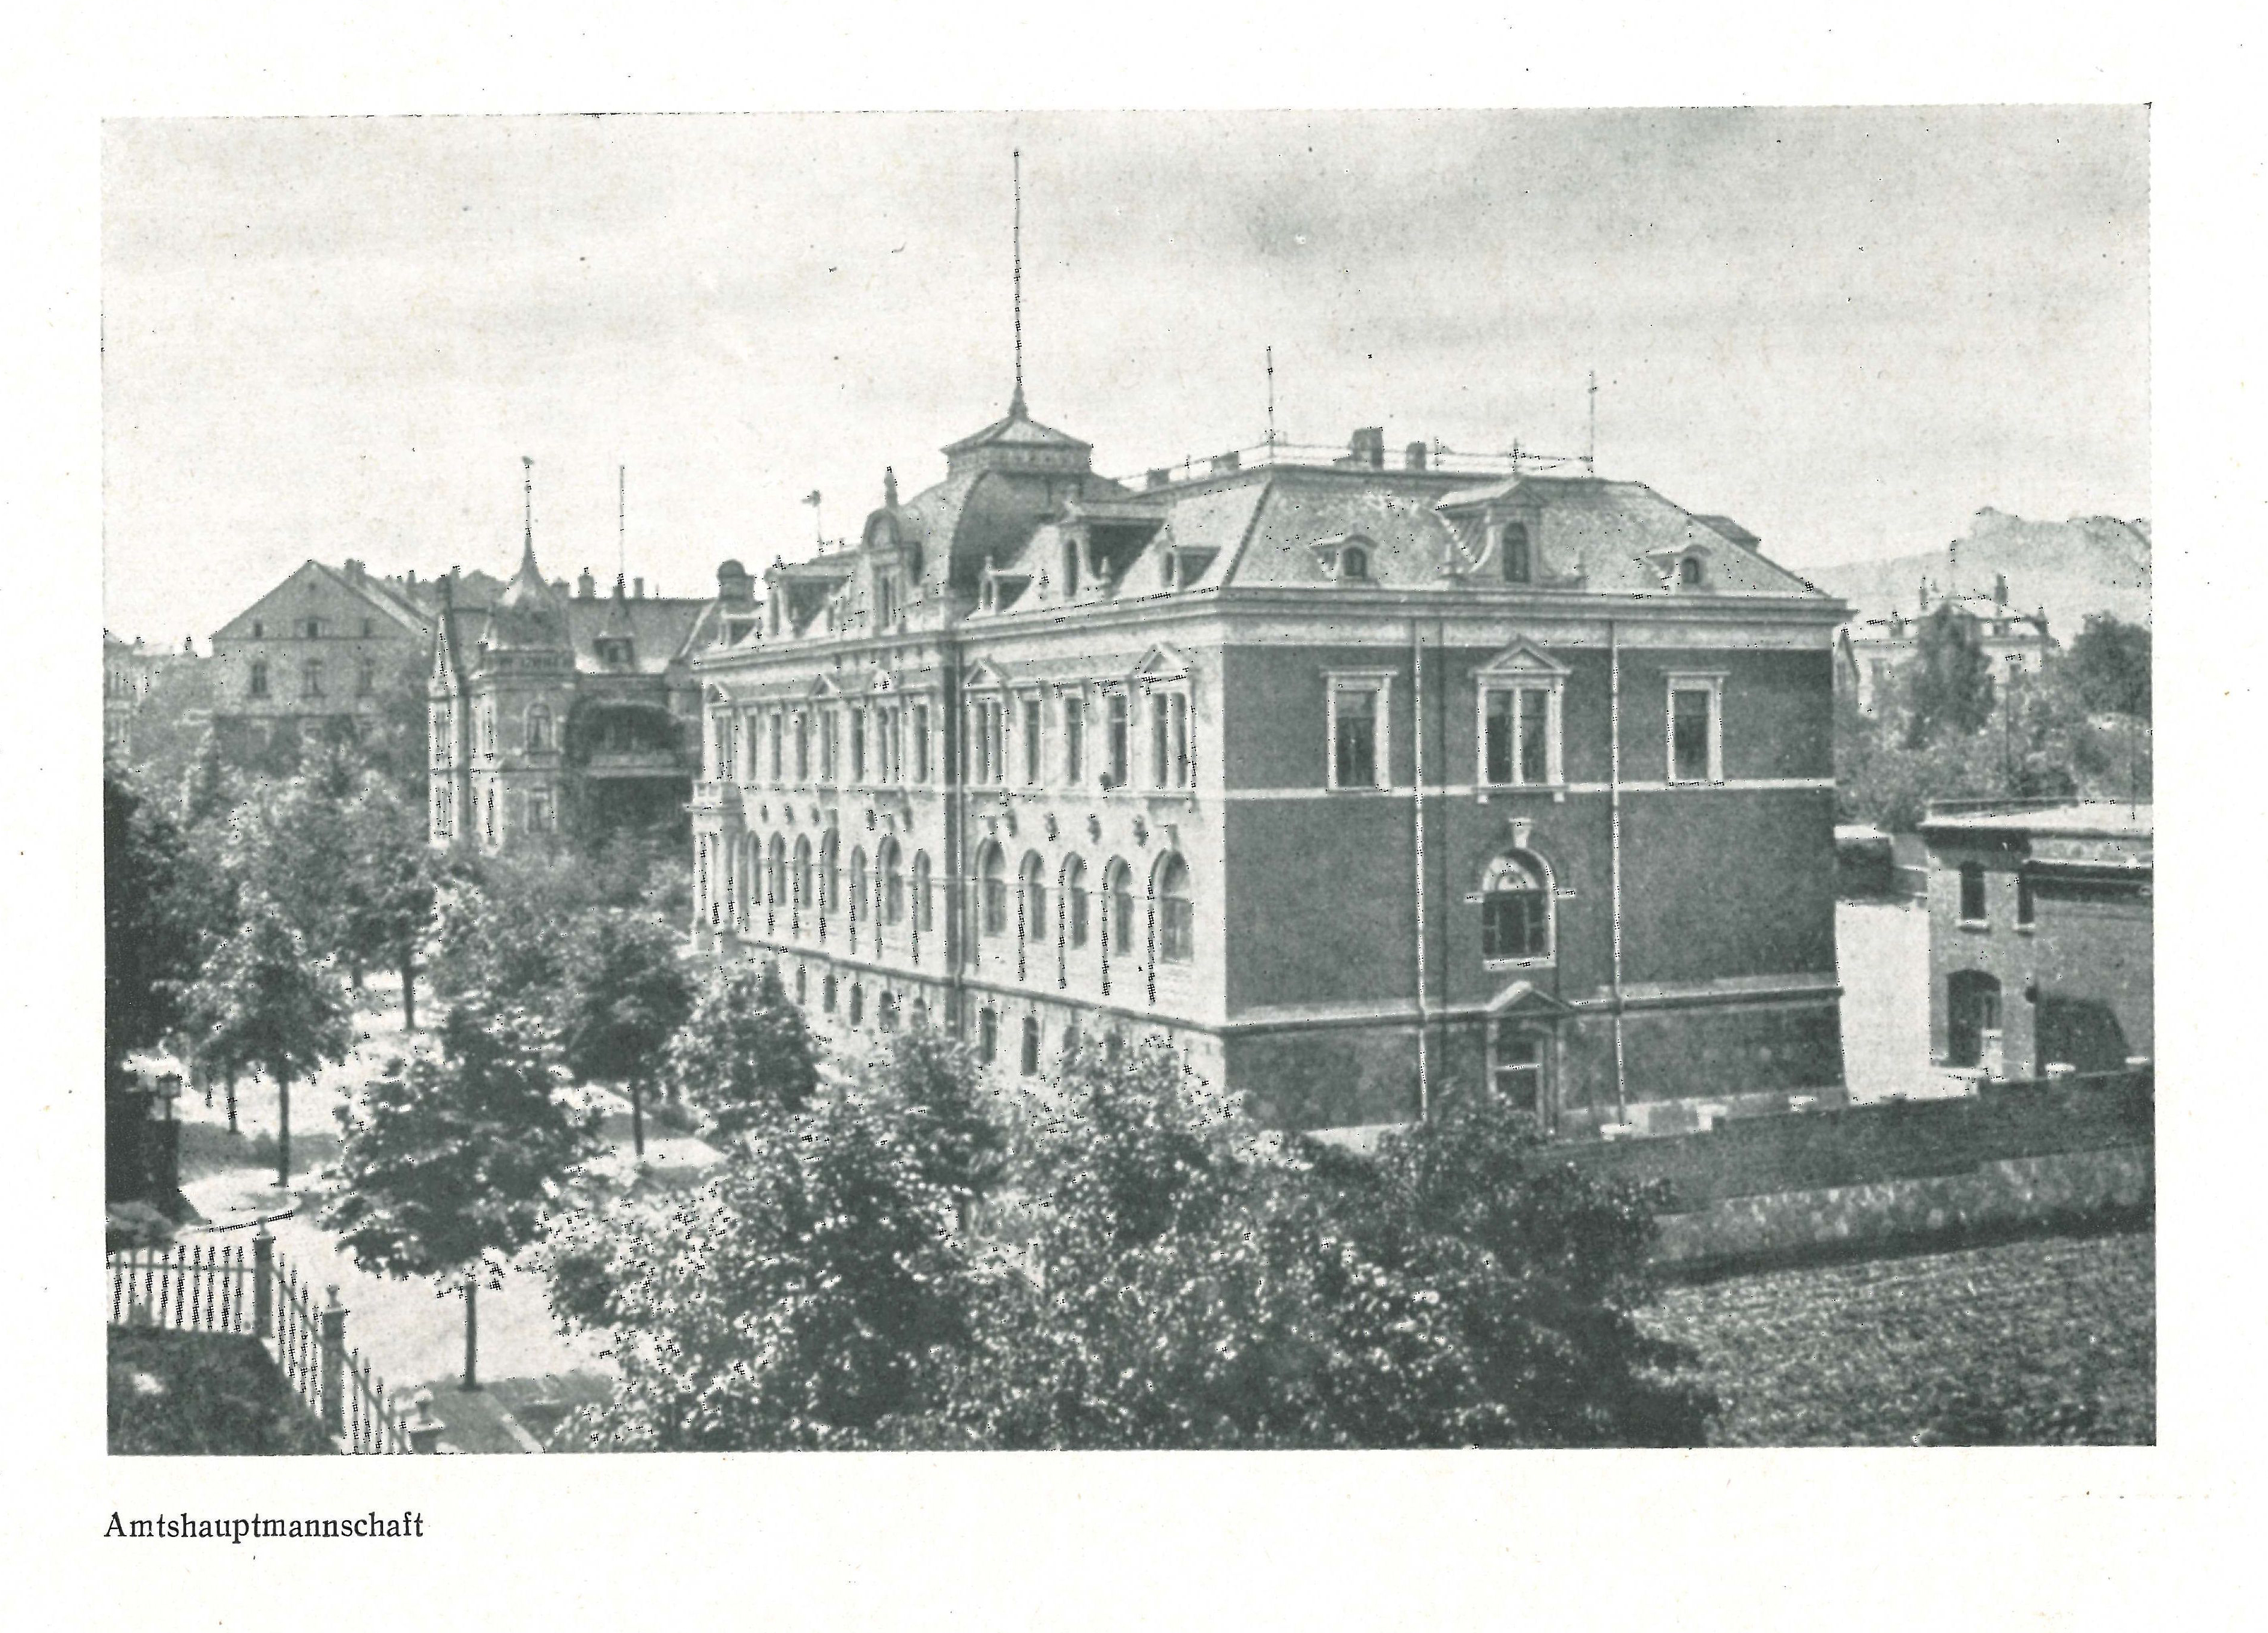 Das mittlerweile sanierte Gebäude der ehemaligen Amtshauptmannschaft (historisches Foto) wird heute vom Landratsamt Mittelsachsen genutzt. (Foto: Archiv Stadt Döbeln)